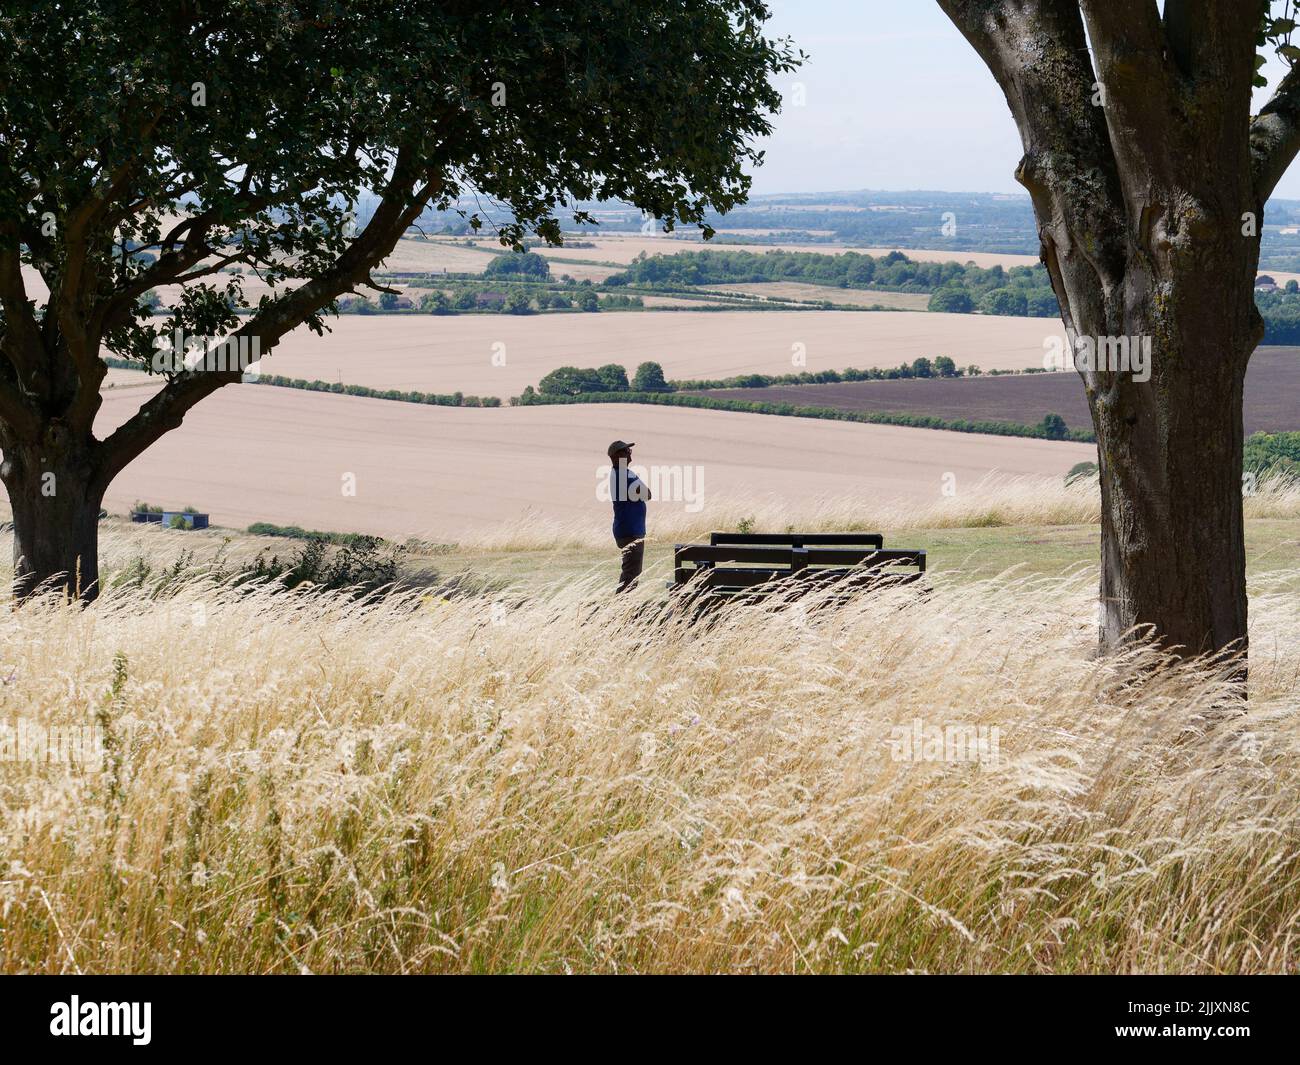 Vista del campo de Whipsnade cerca de Dunstable en Bedfordshire, Inglaterra. Caballero en silueta admira el paisaje Foto de stock